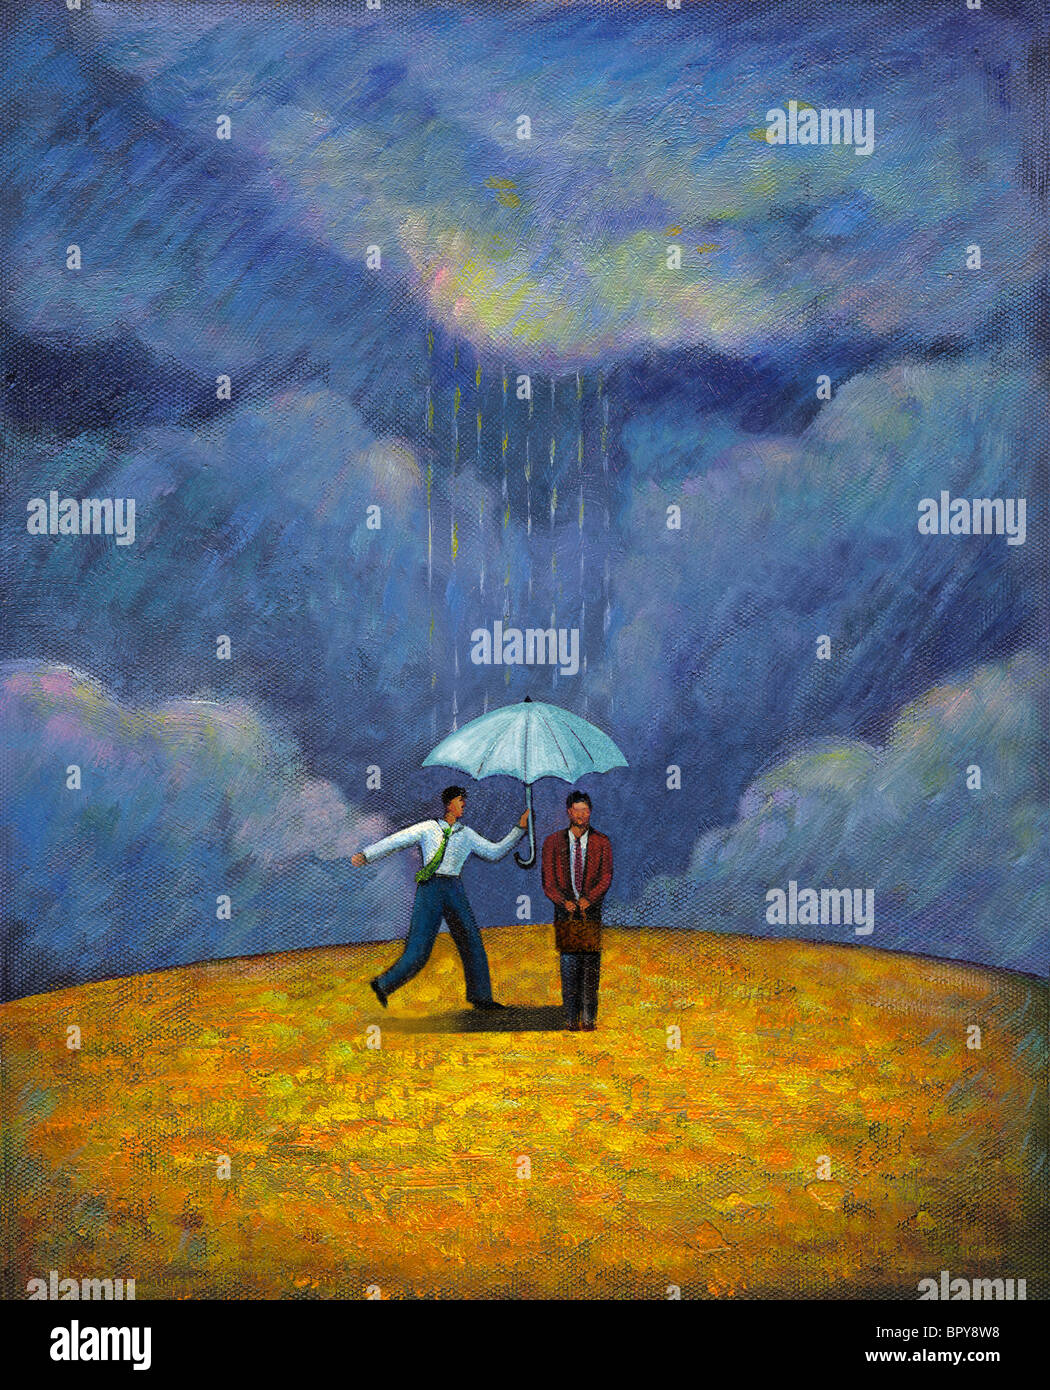 Deux hommes debout sous un parapluie lors d'une tempête de pluie Banque D'Images